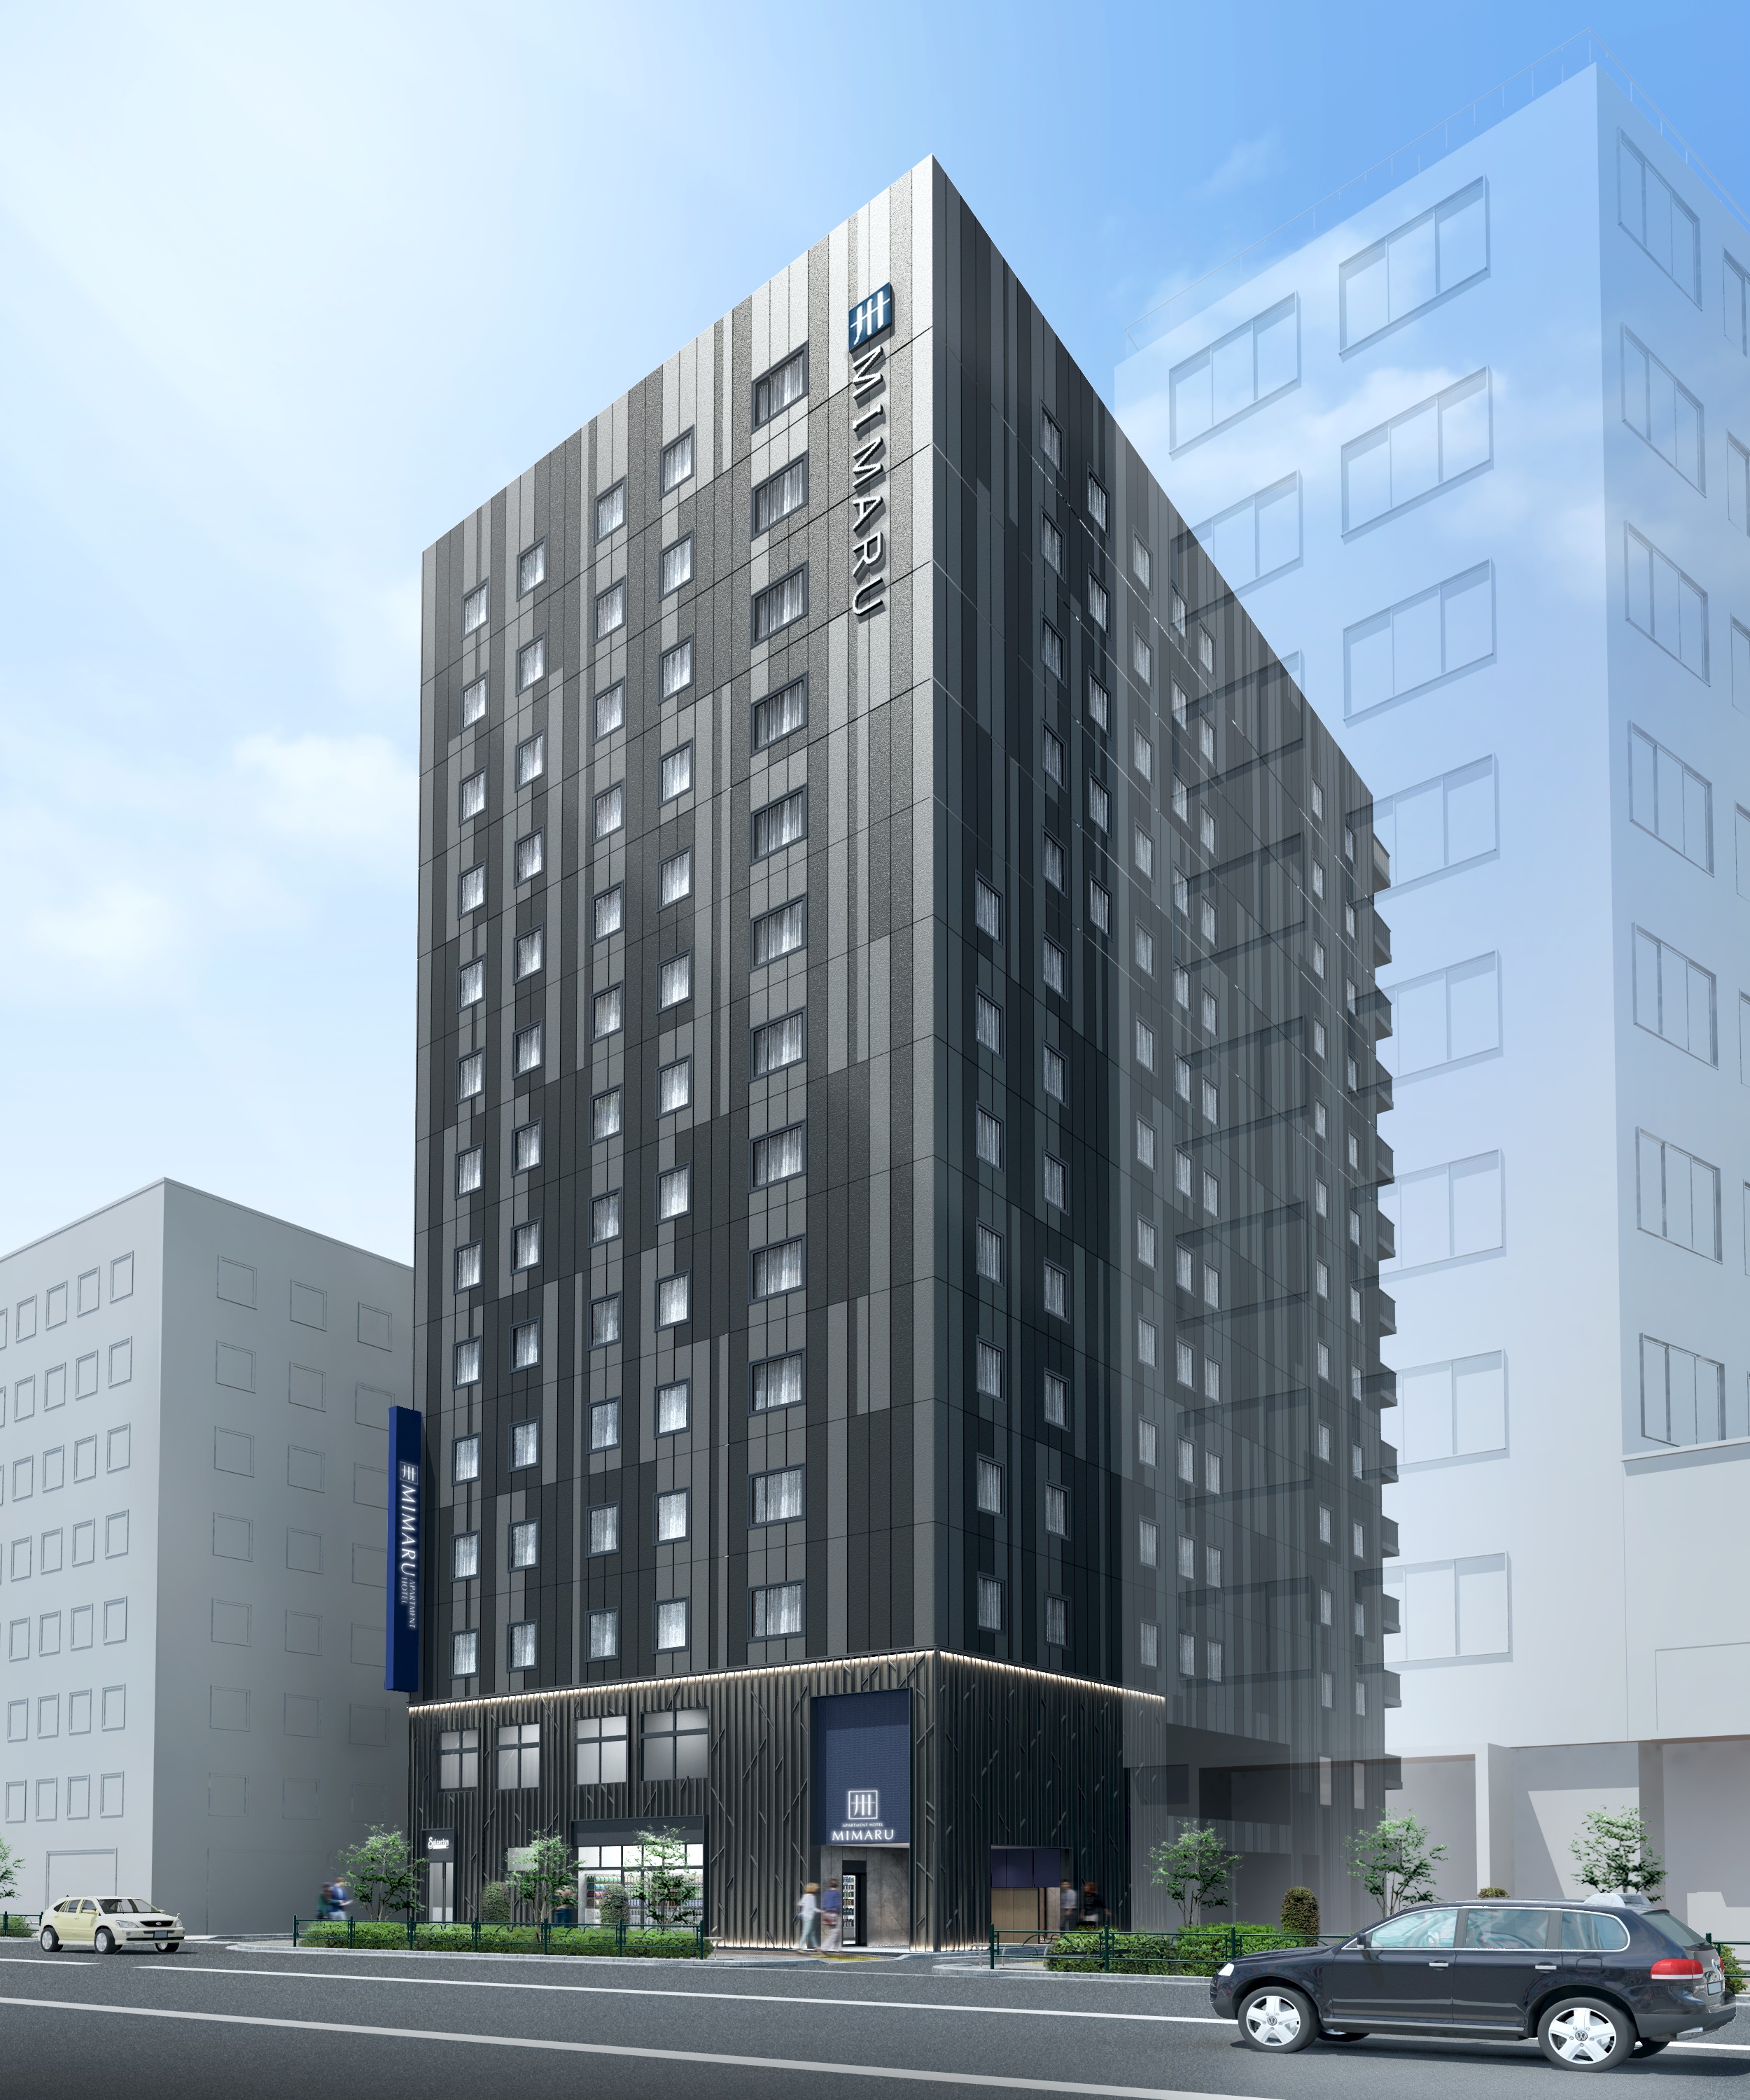 アパートメントホテル ミマル Mimaru 22施設目の開業 株式会社コスモスホテルマネジメントのプレスリリース